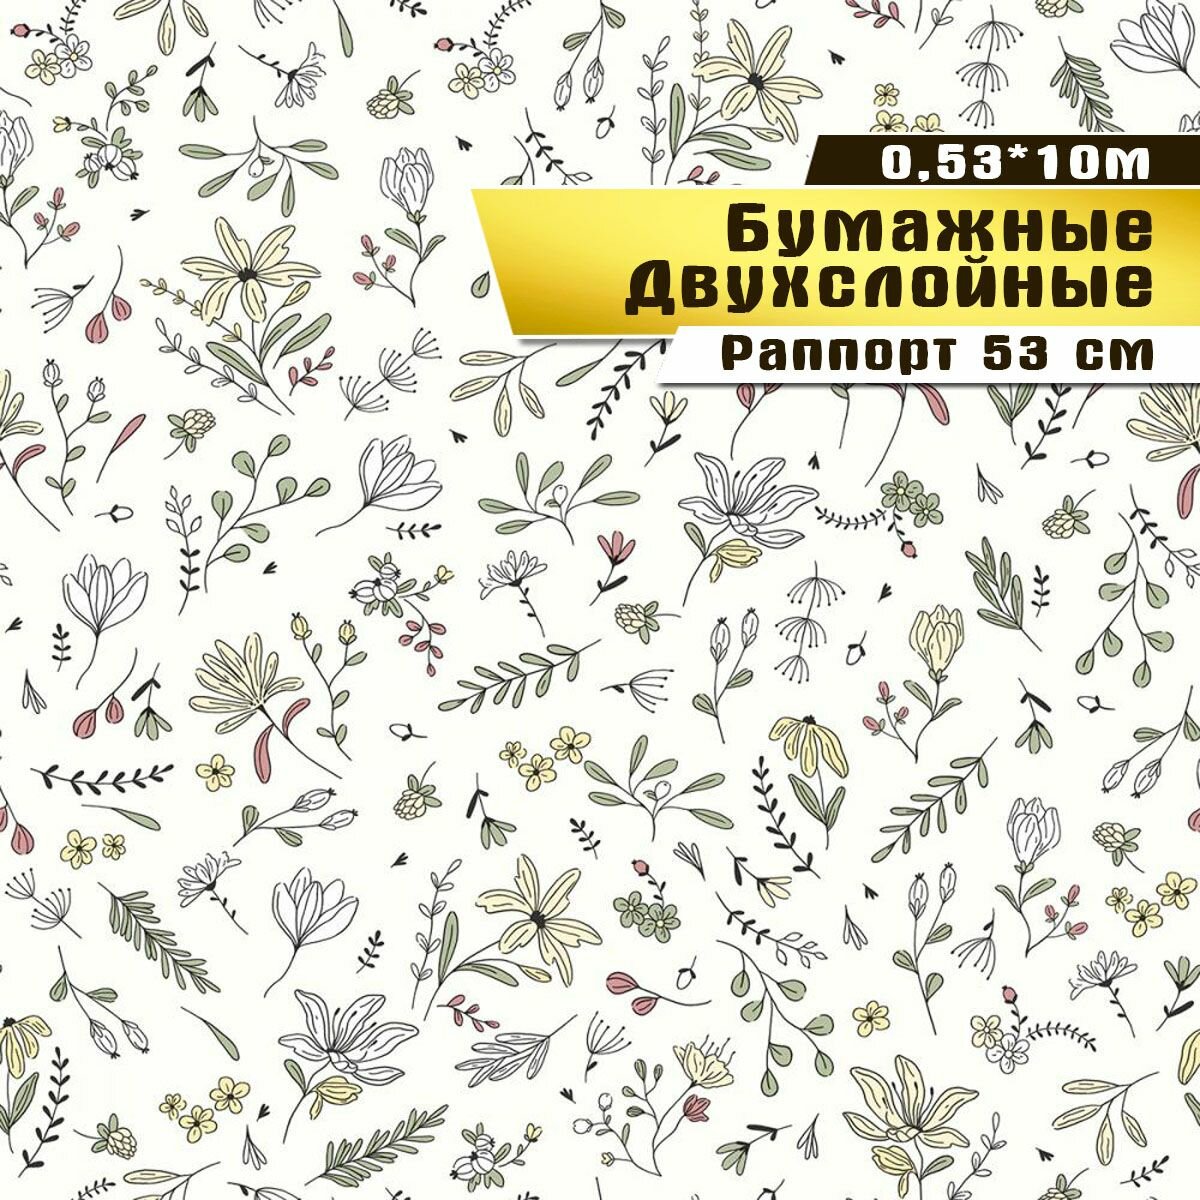 Обои бумажные, двухслойные, Саратовская обойная фабрика,"Июль"арт.892-04, 0,53*10м.